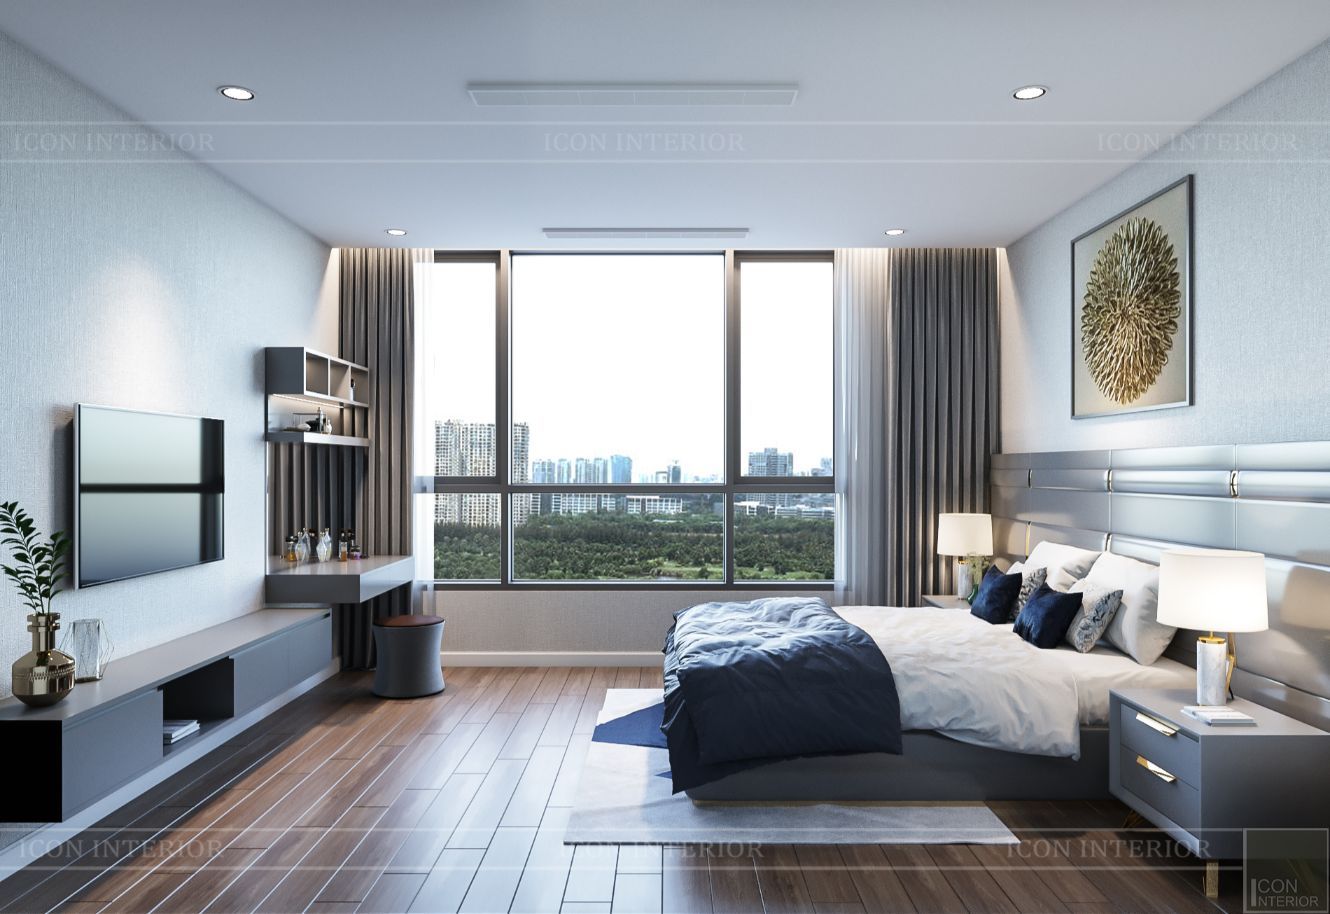 LỰA CHỌN THIẾT KẾ HIỆN ĐẠI VÀ MỚI MẺ NHƯ CĂN HỘ C3 VINHOMES, ICON INTERIOR ICON INTERIOR Modern style bedroom